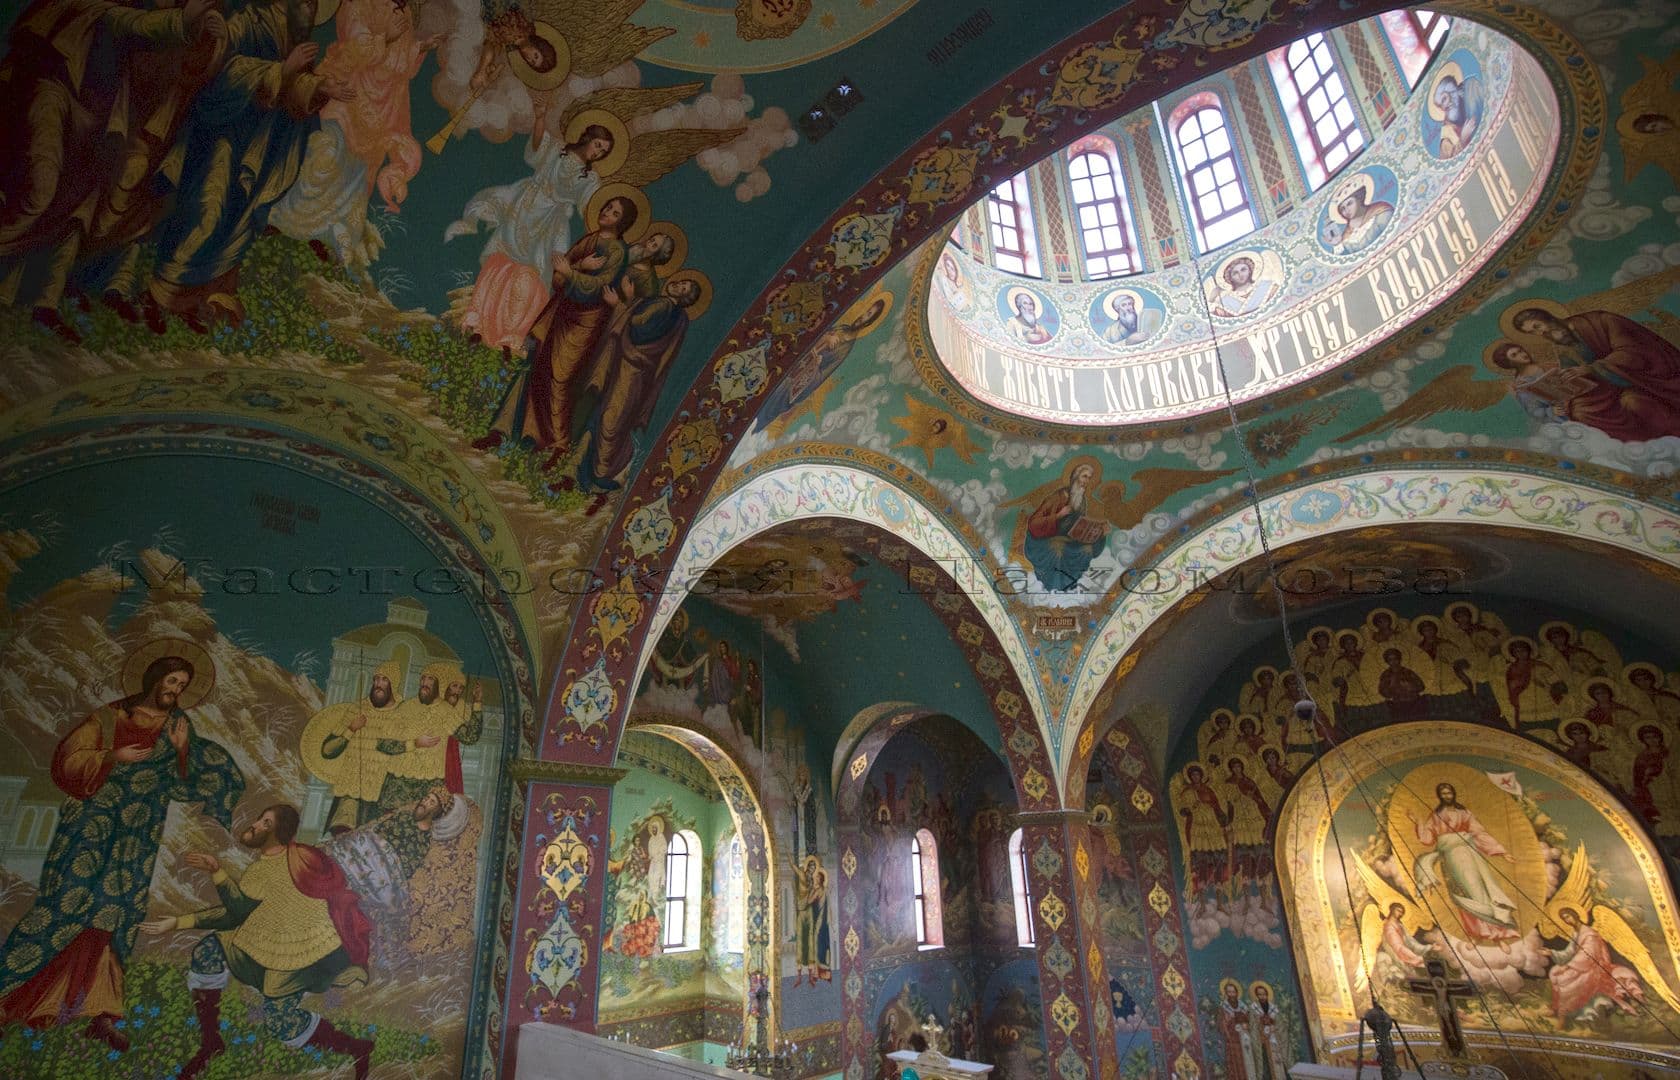 Нашими иконописцами расписаны более 3000 кв.м стен храма в ушаковском стиле